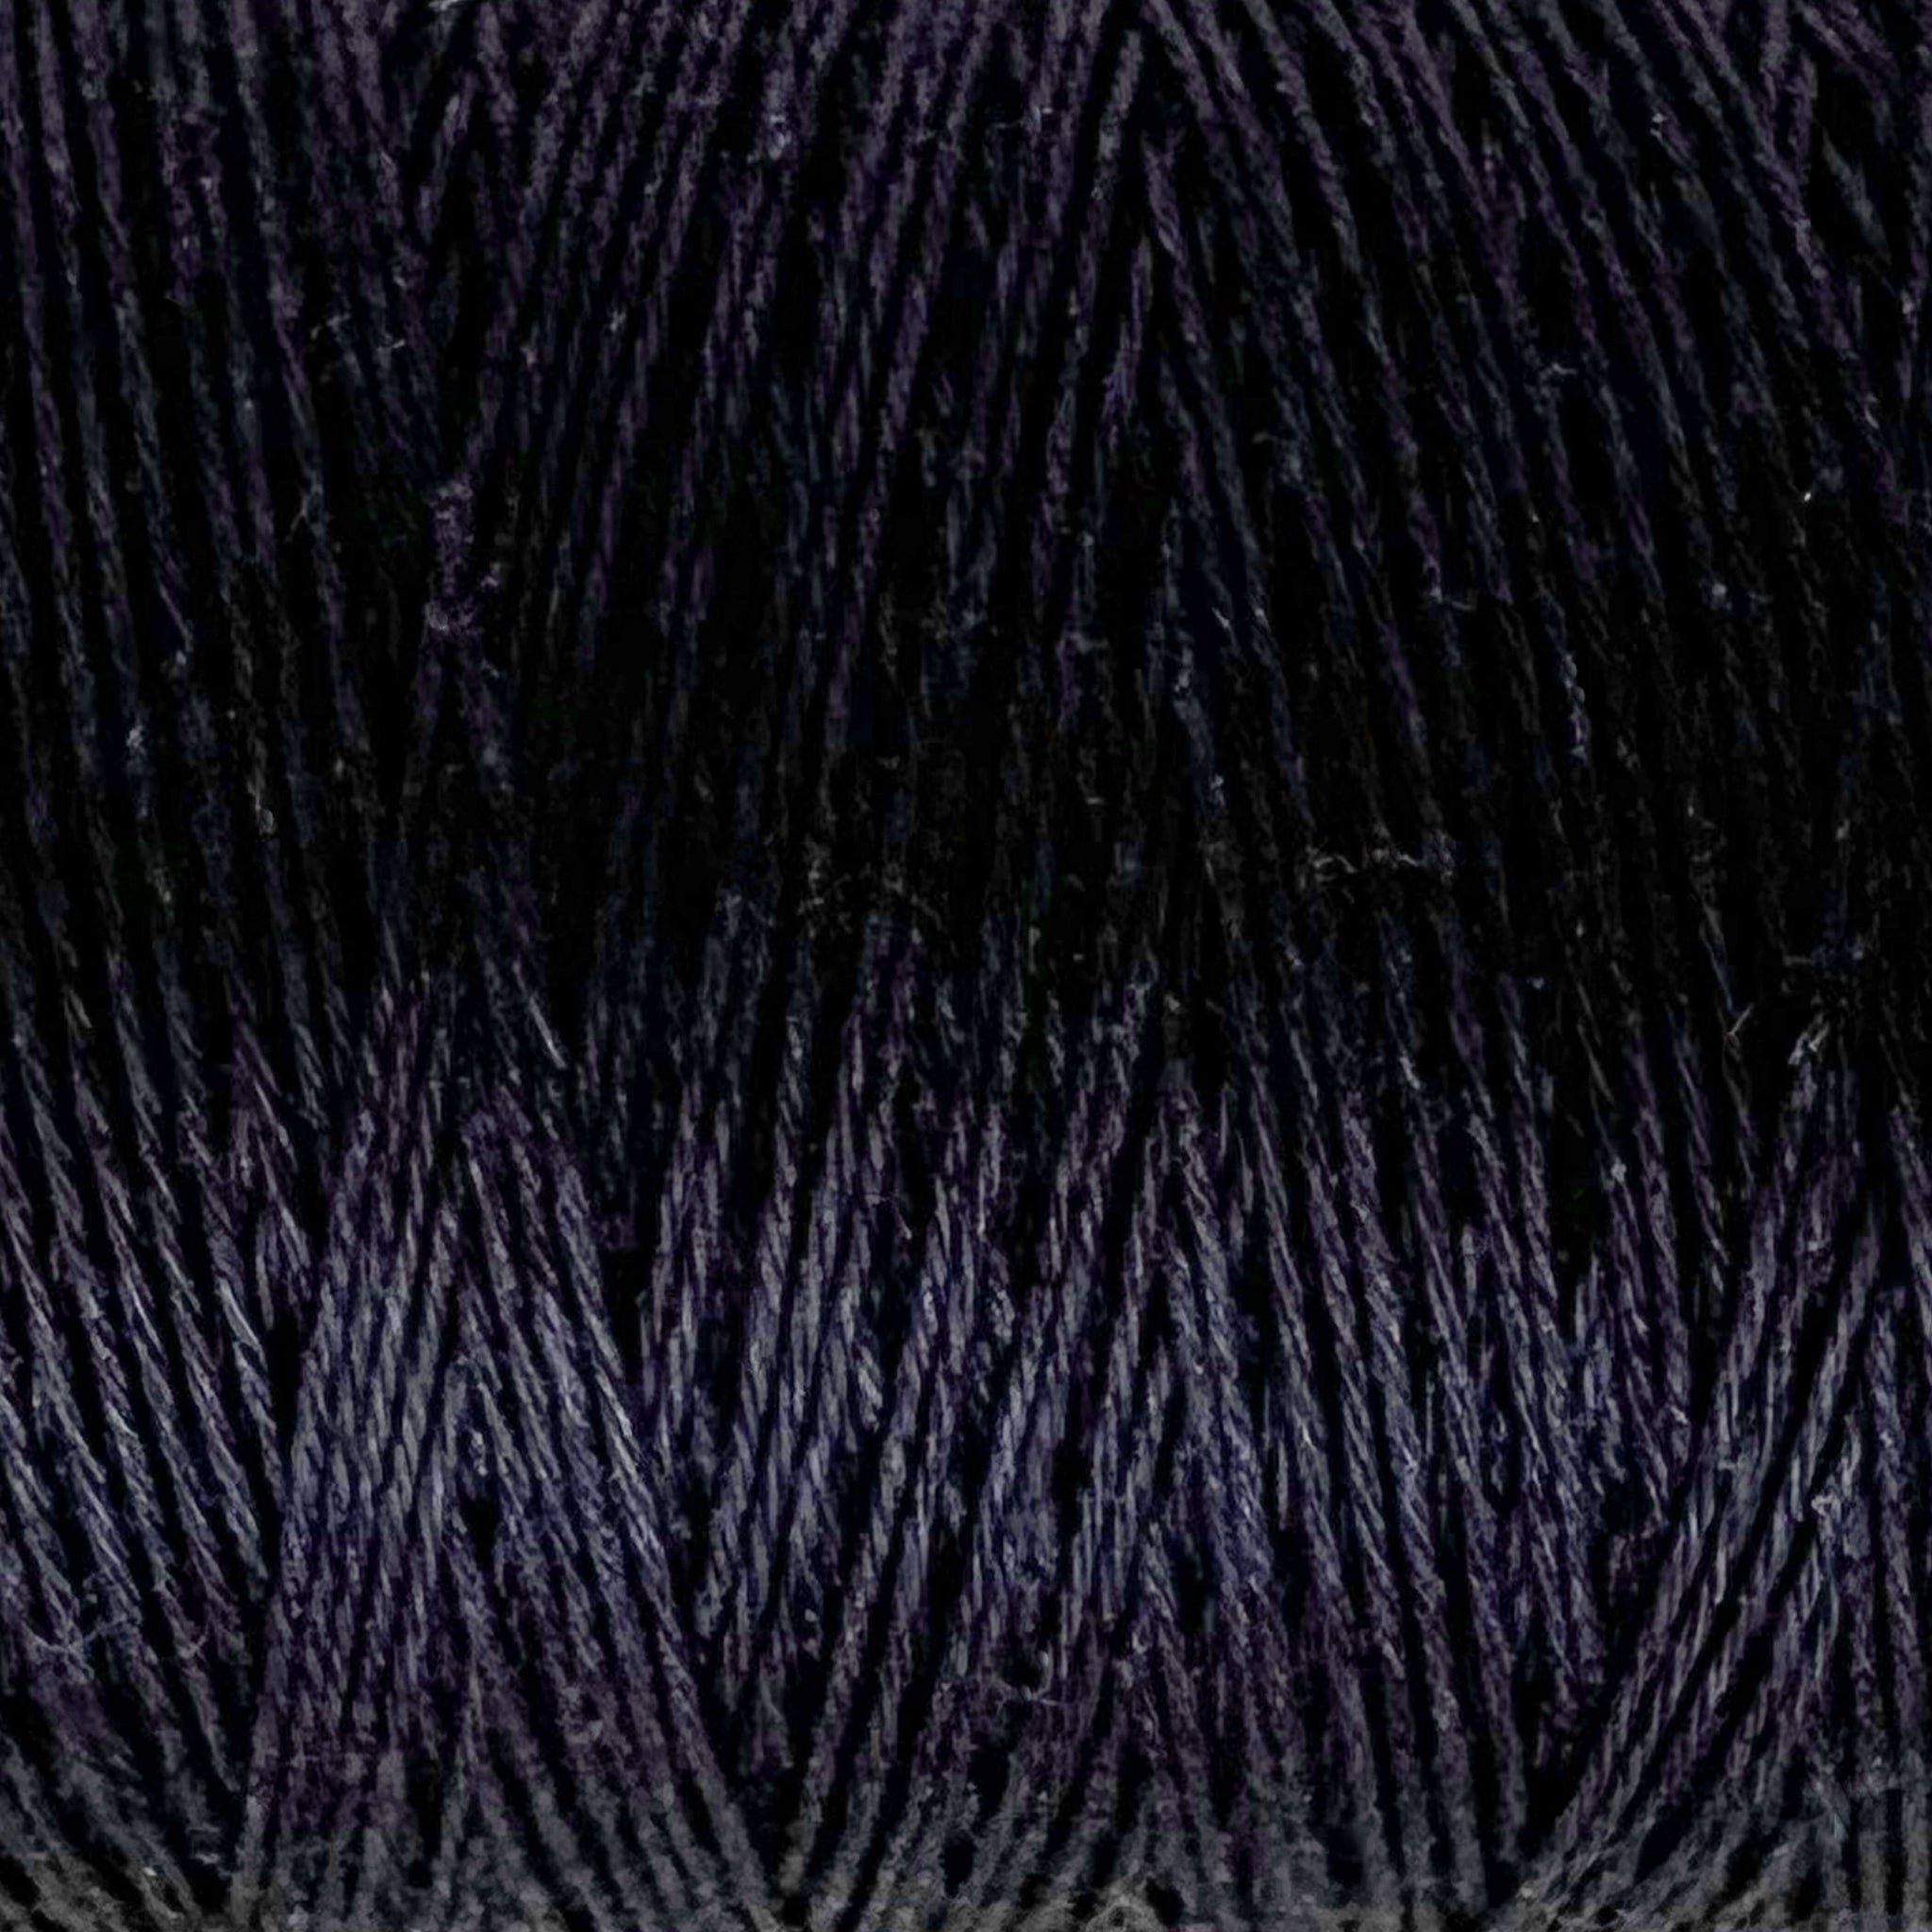 4/8 Black Cotton Warp String – Spruce & Linen